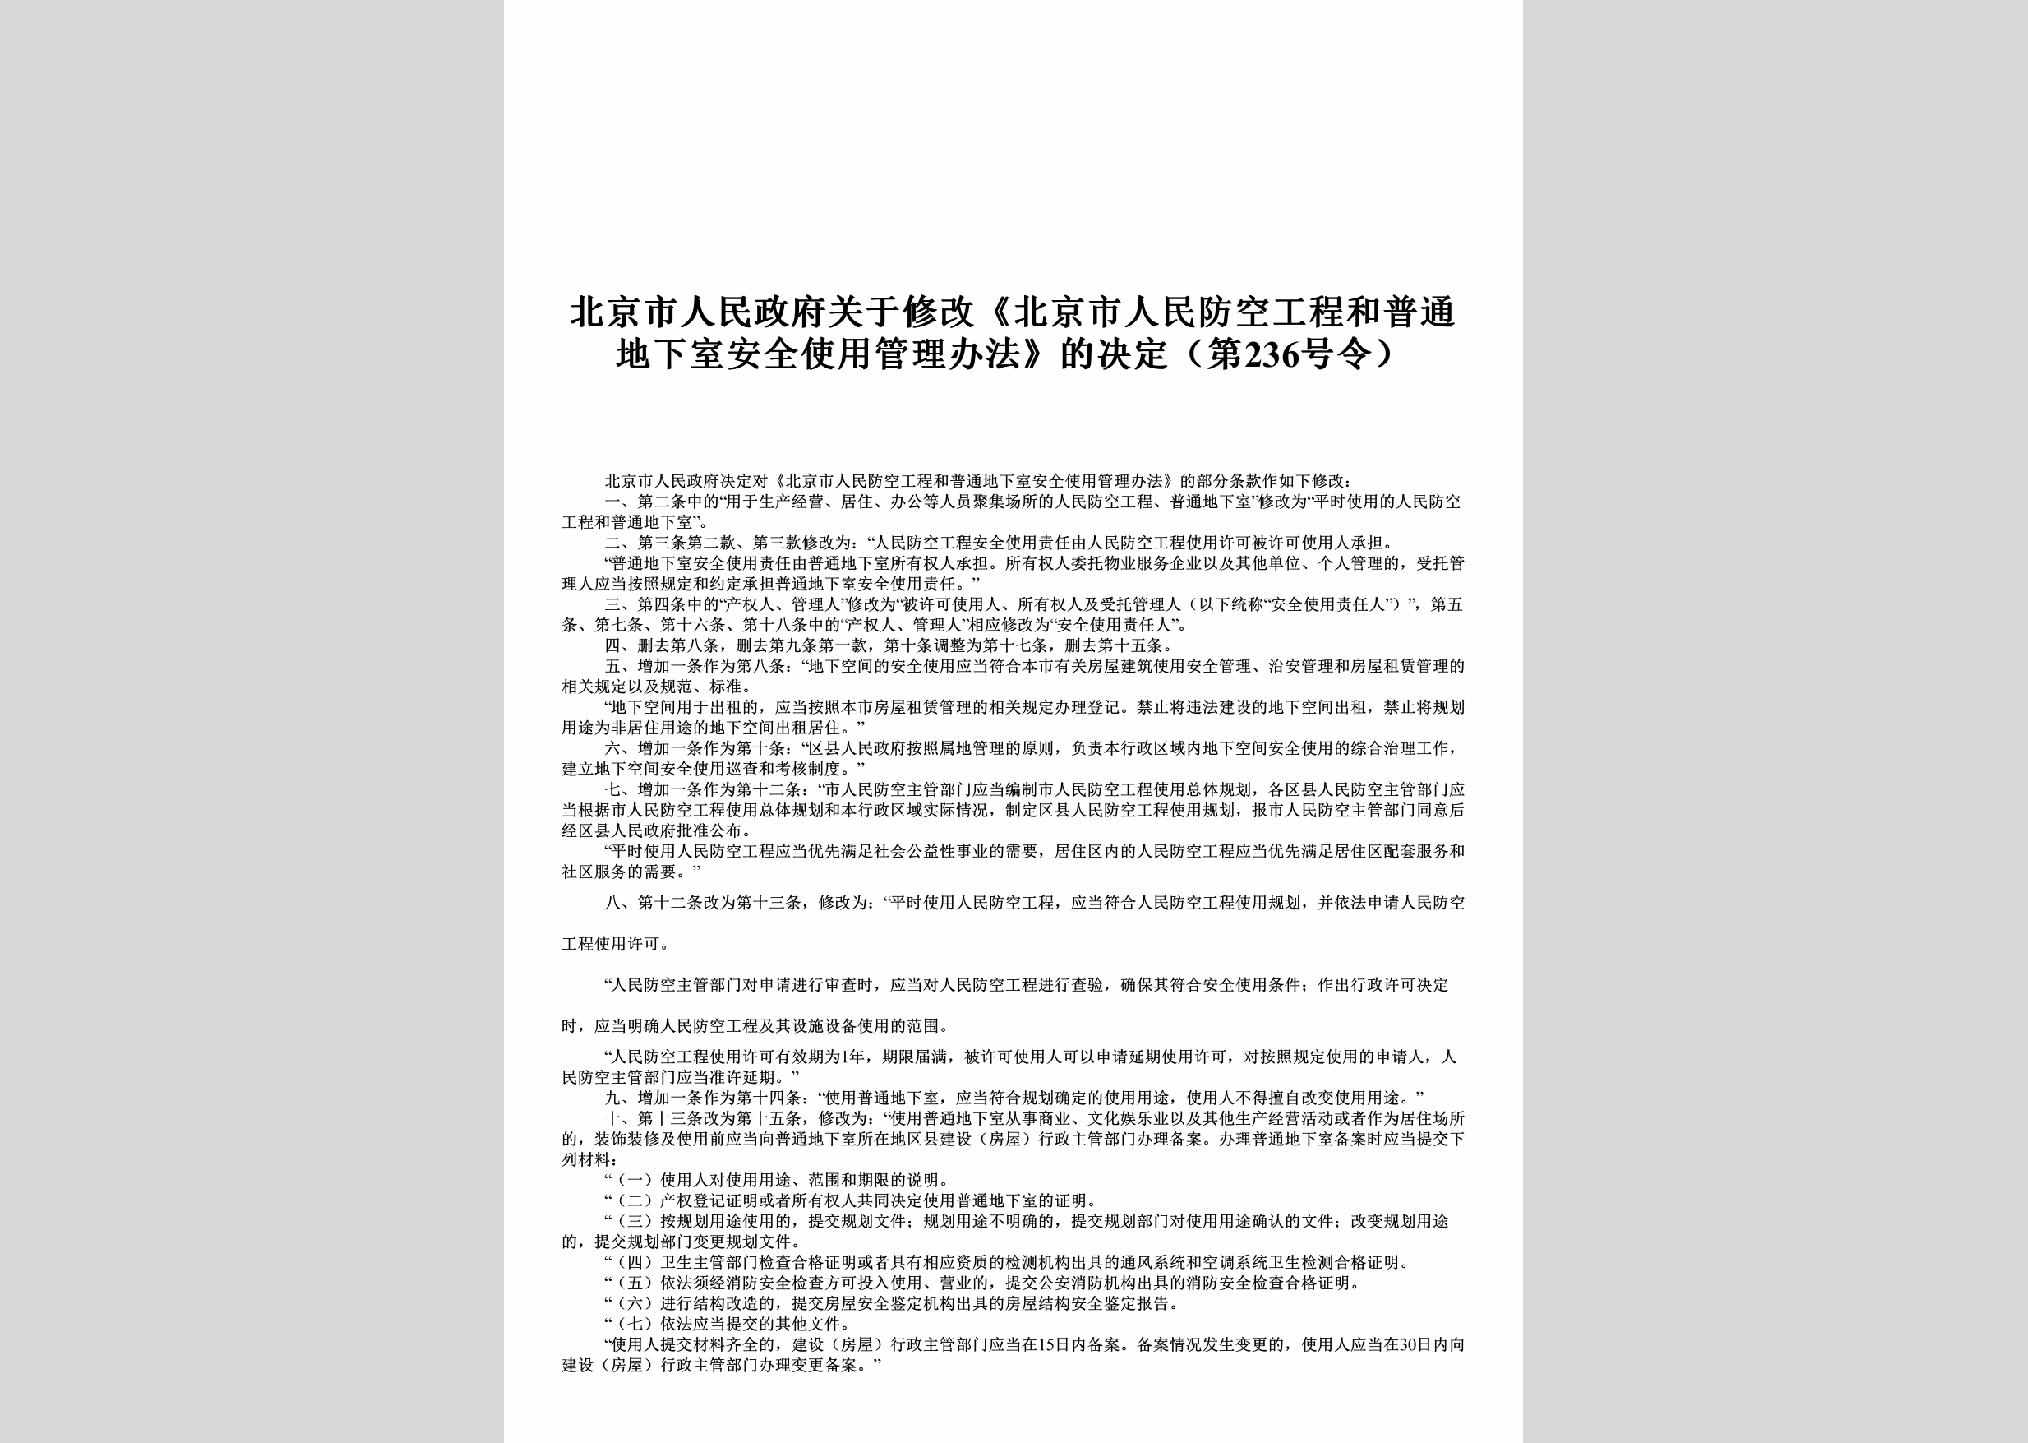 北京市人民政府第236号：关于修改《北京市人民防空工程和普通地下室安全使用管理办法》的决定